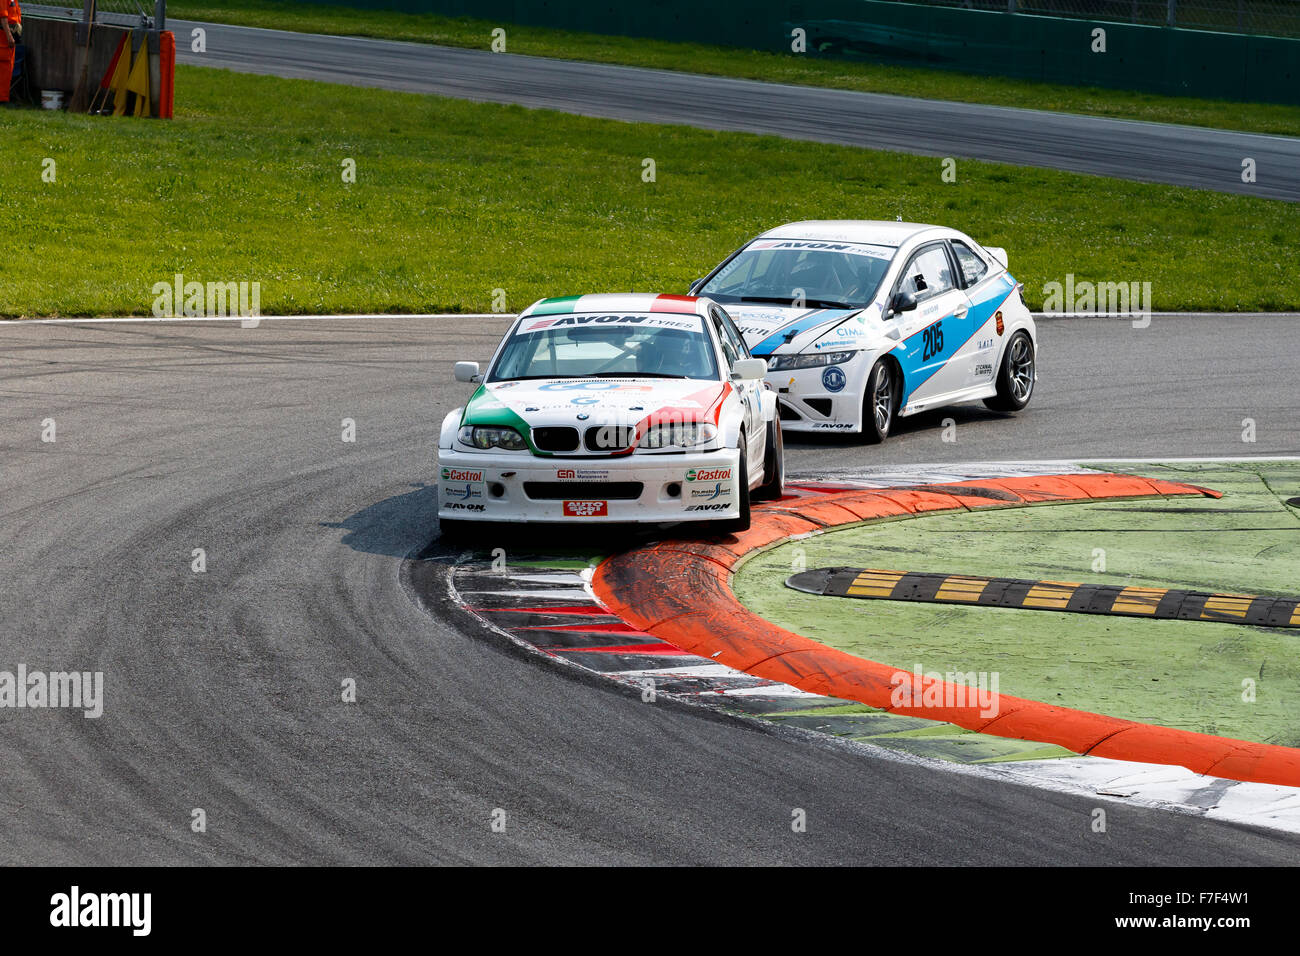 Monza, Italie - 30 mai 2015 : BMW 320i d'Promotorsport, équipe entraînée par ZANIN Filippo Maria au cours de la C.I. Endurance Turismo Banque D'Images